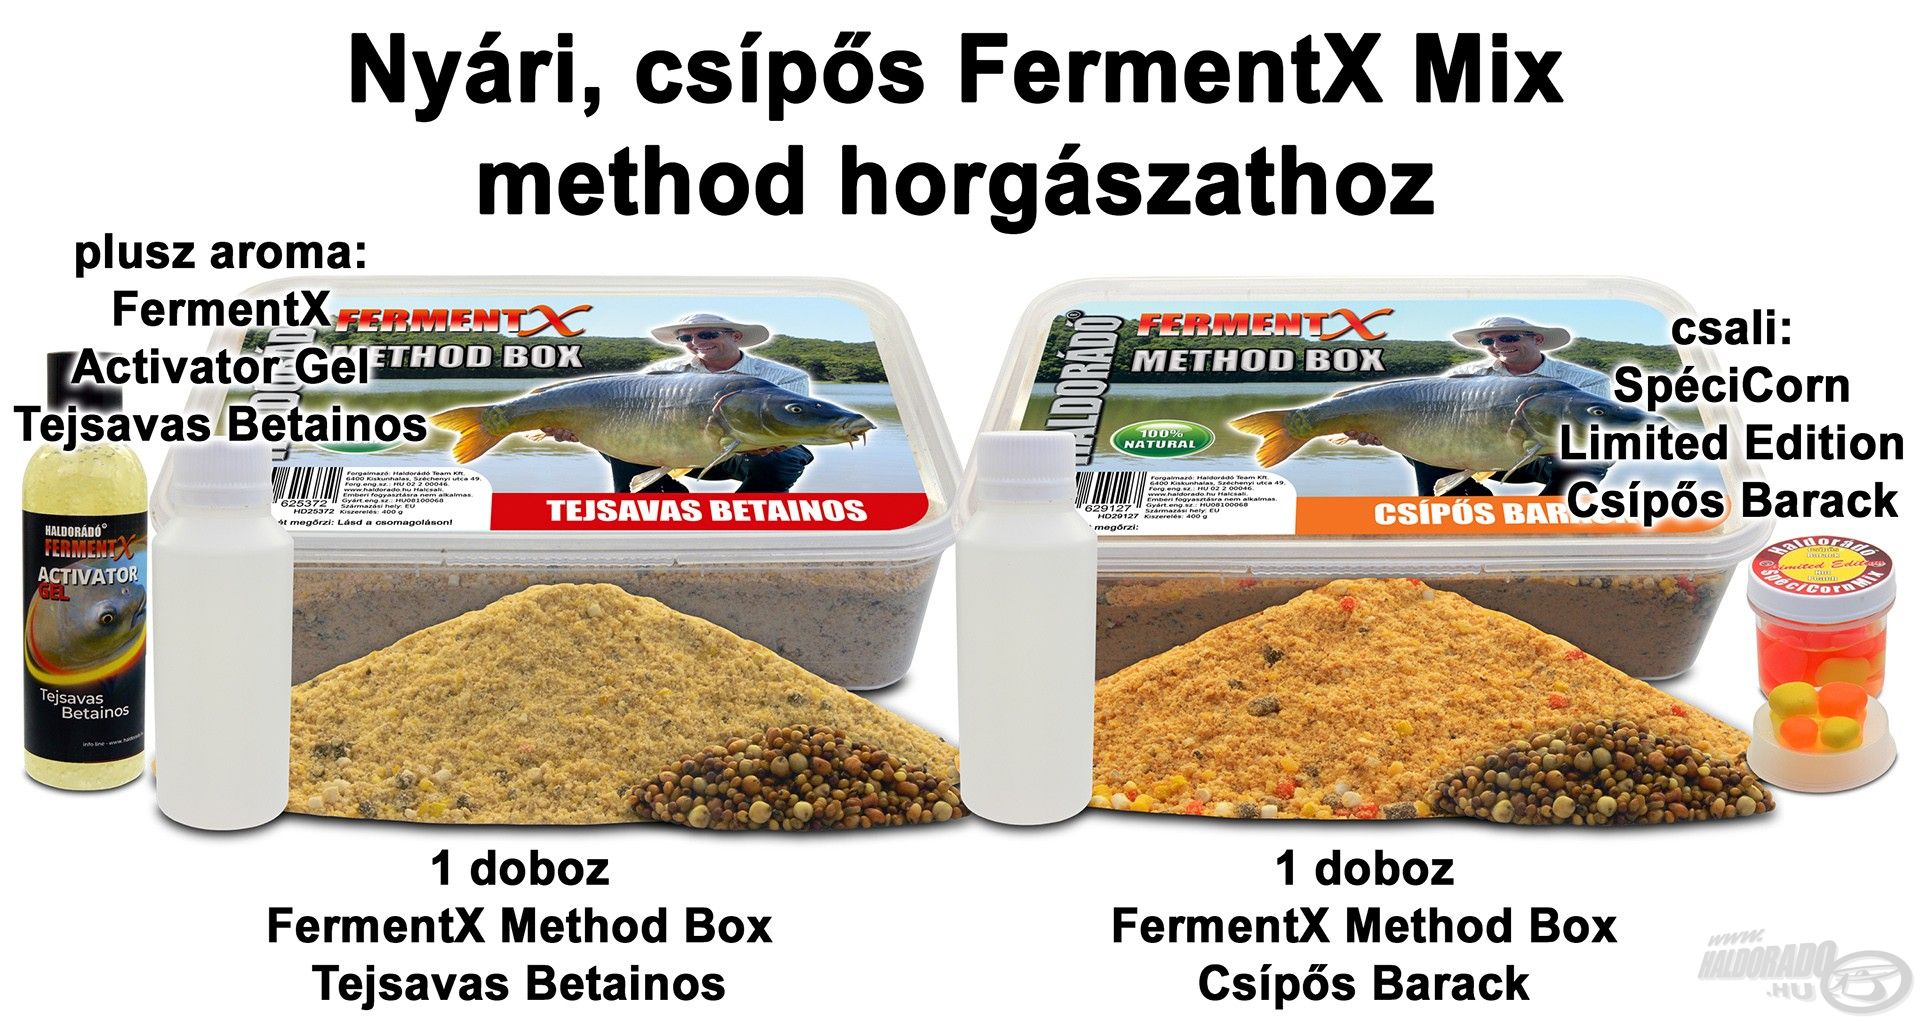 Nyári, csípős FermentX Mix method horgászathoz